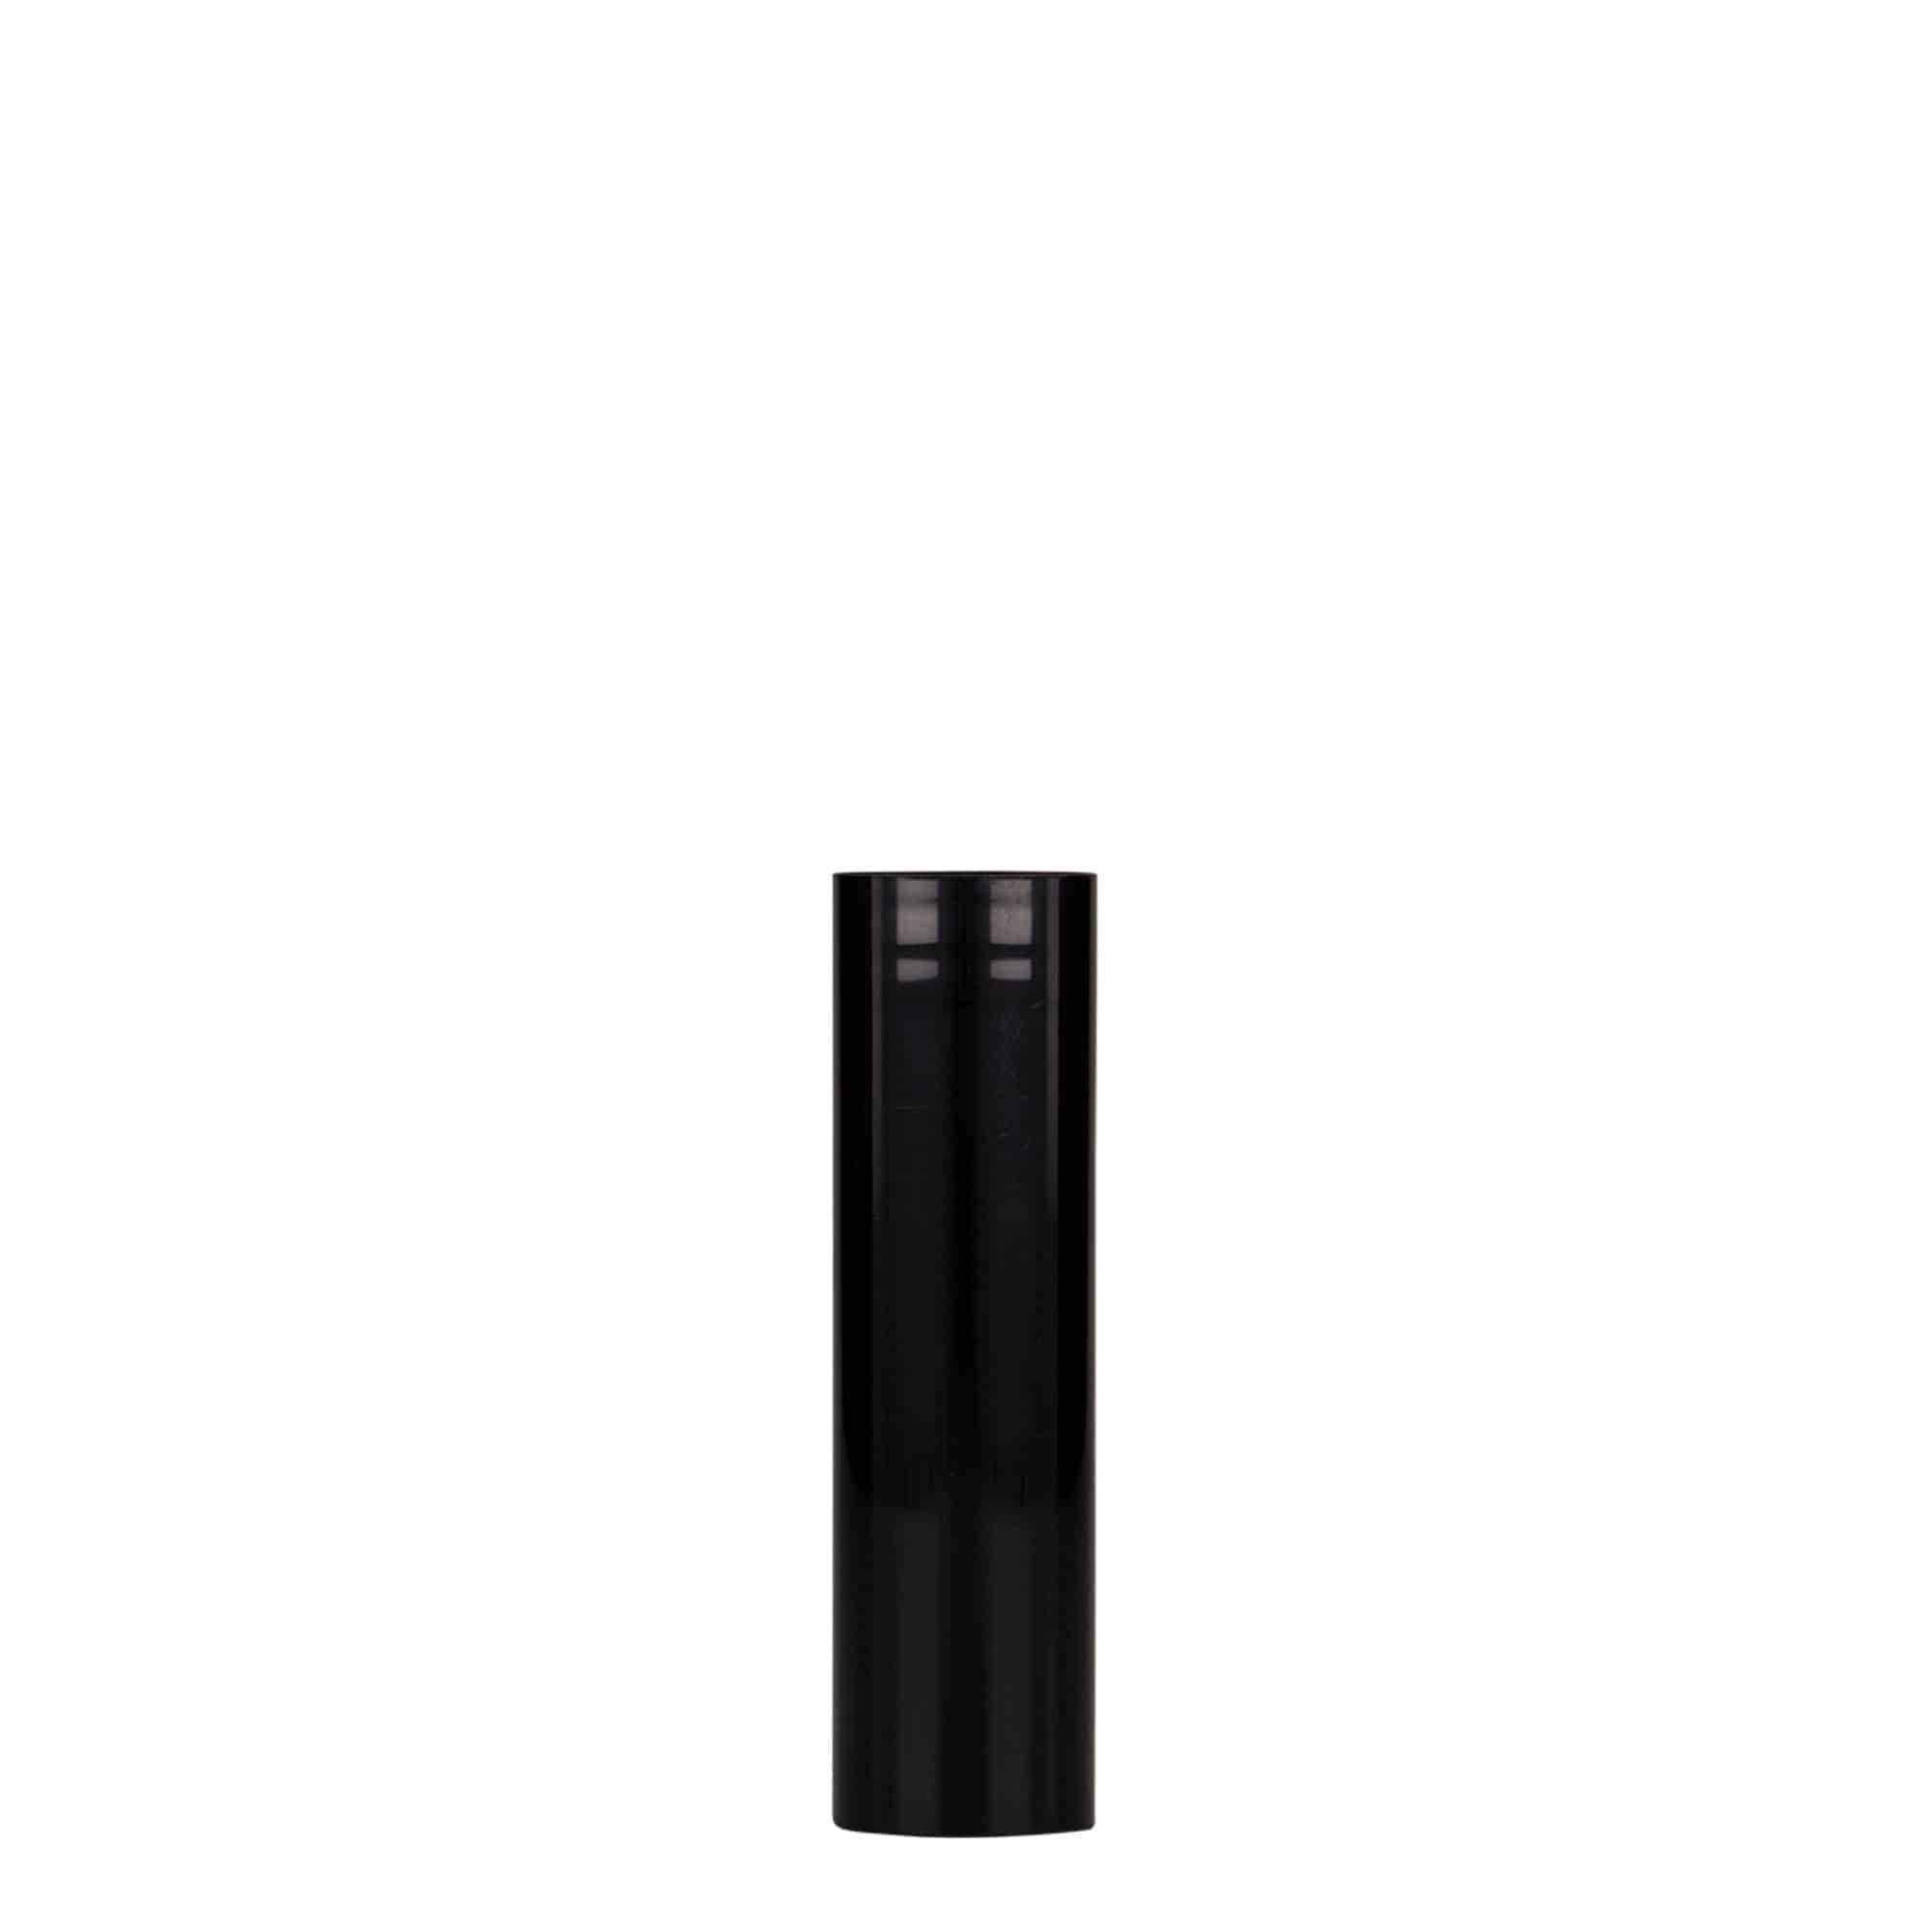 Bezvzduchový dávkovač 15 ml 'Nano', plast PP, černý